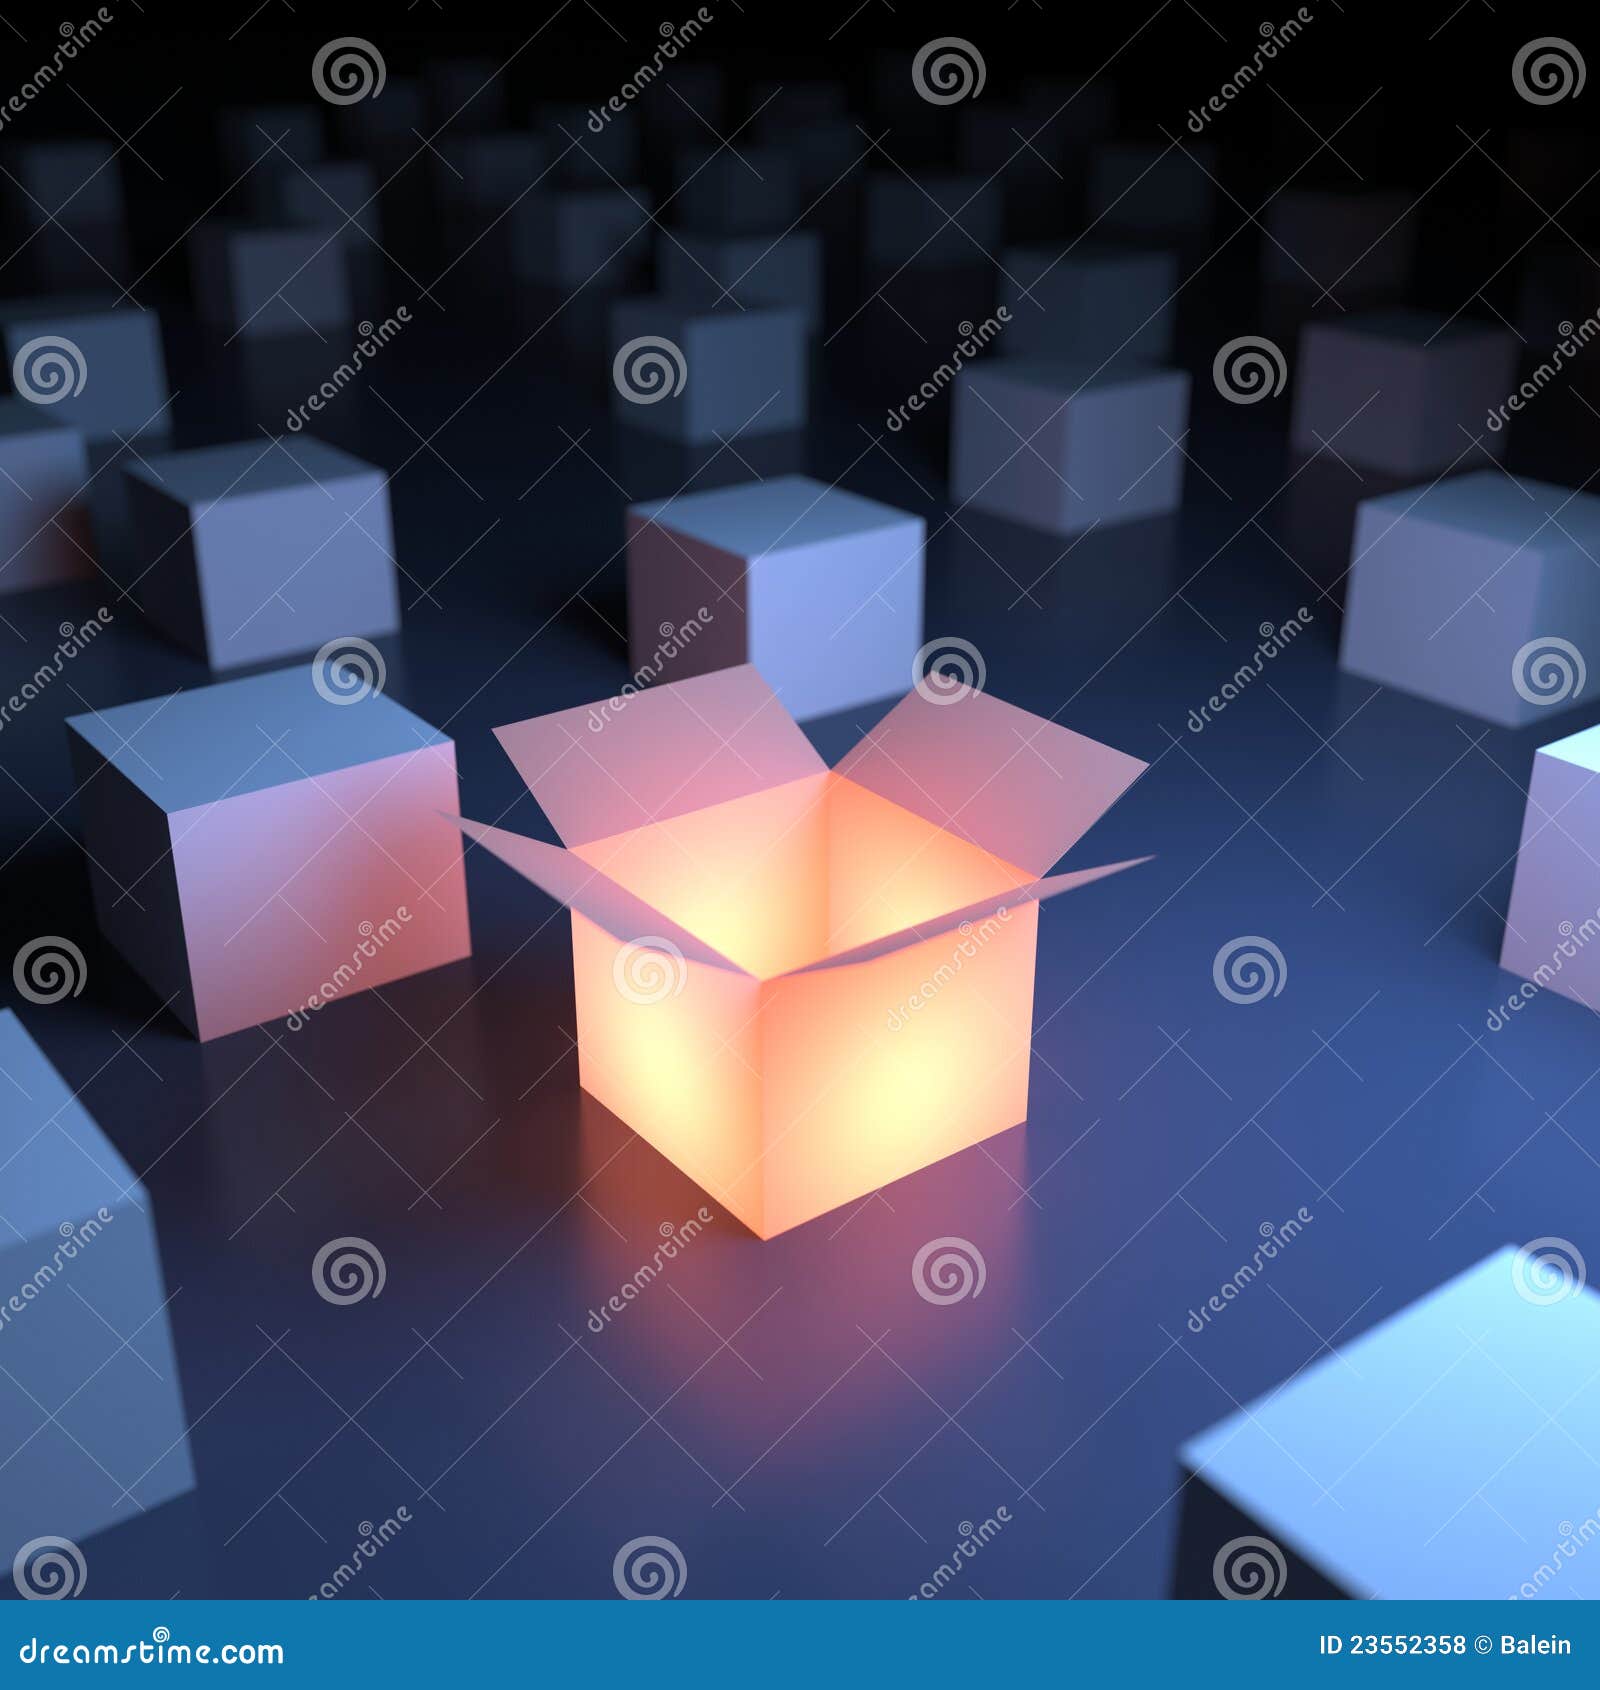 unique luminous box